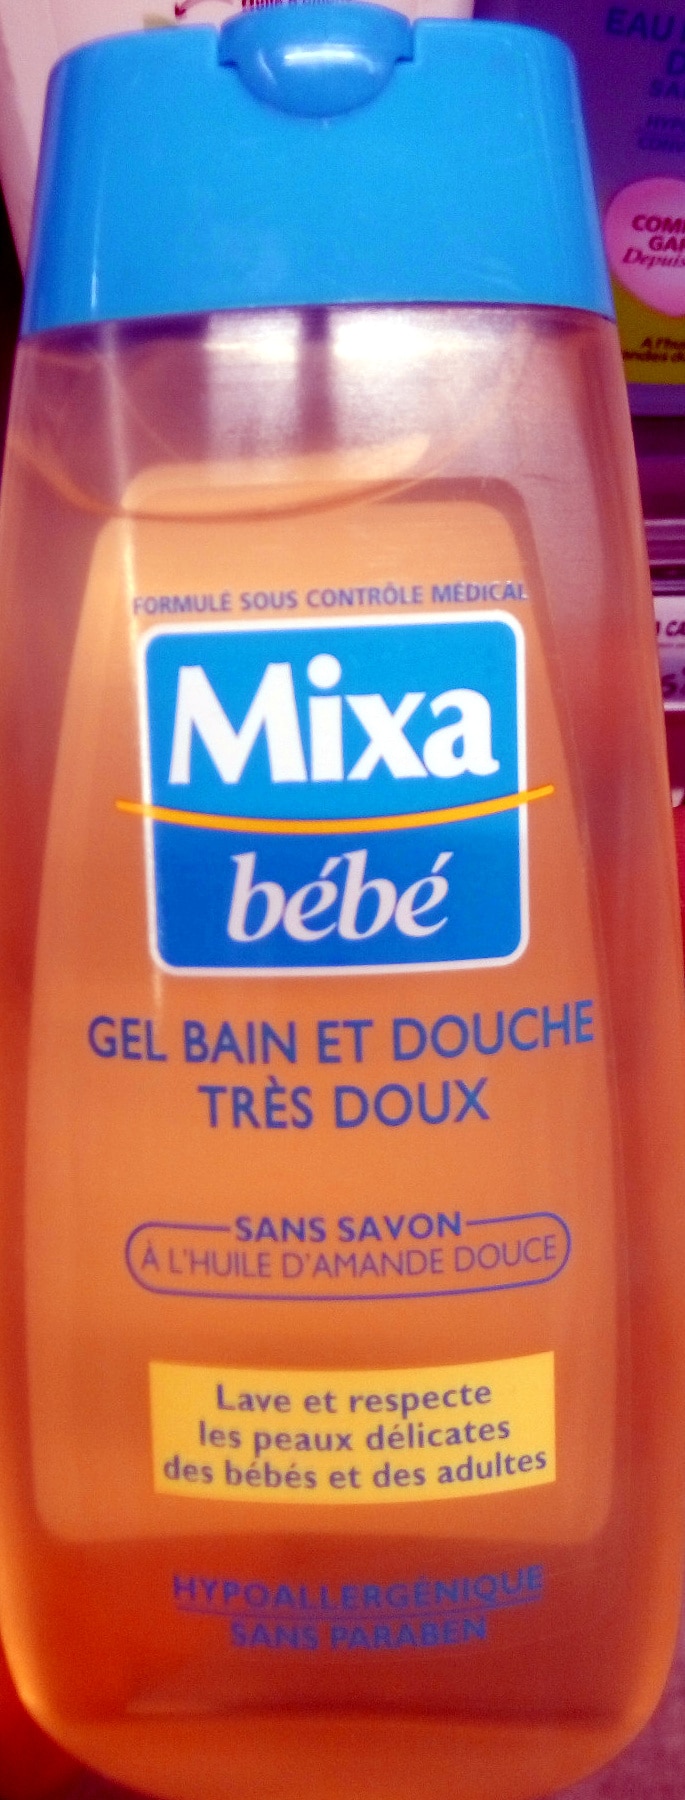 Gel Bain et Douche Très Doux - Mixa - Bébé - Index des produits